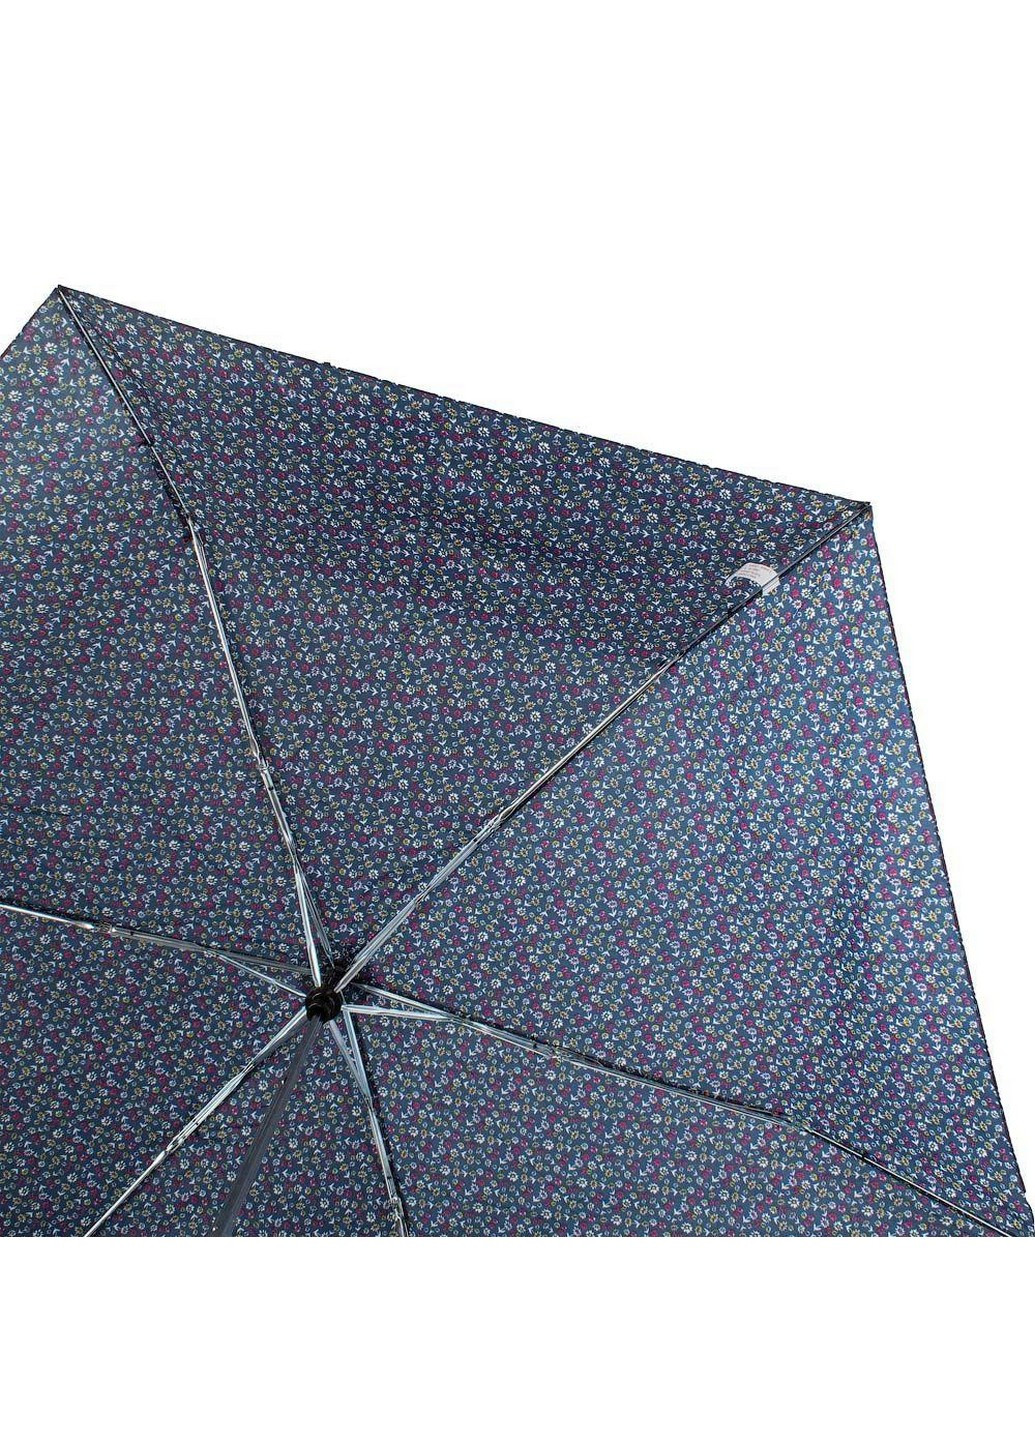 Женский складной зонт механический 91 см Daisy (259212820)